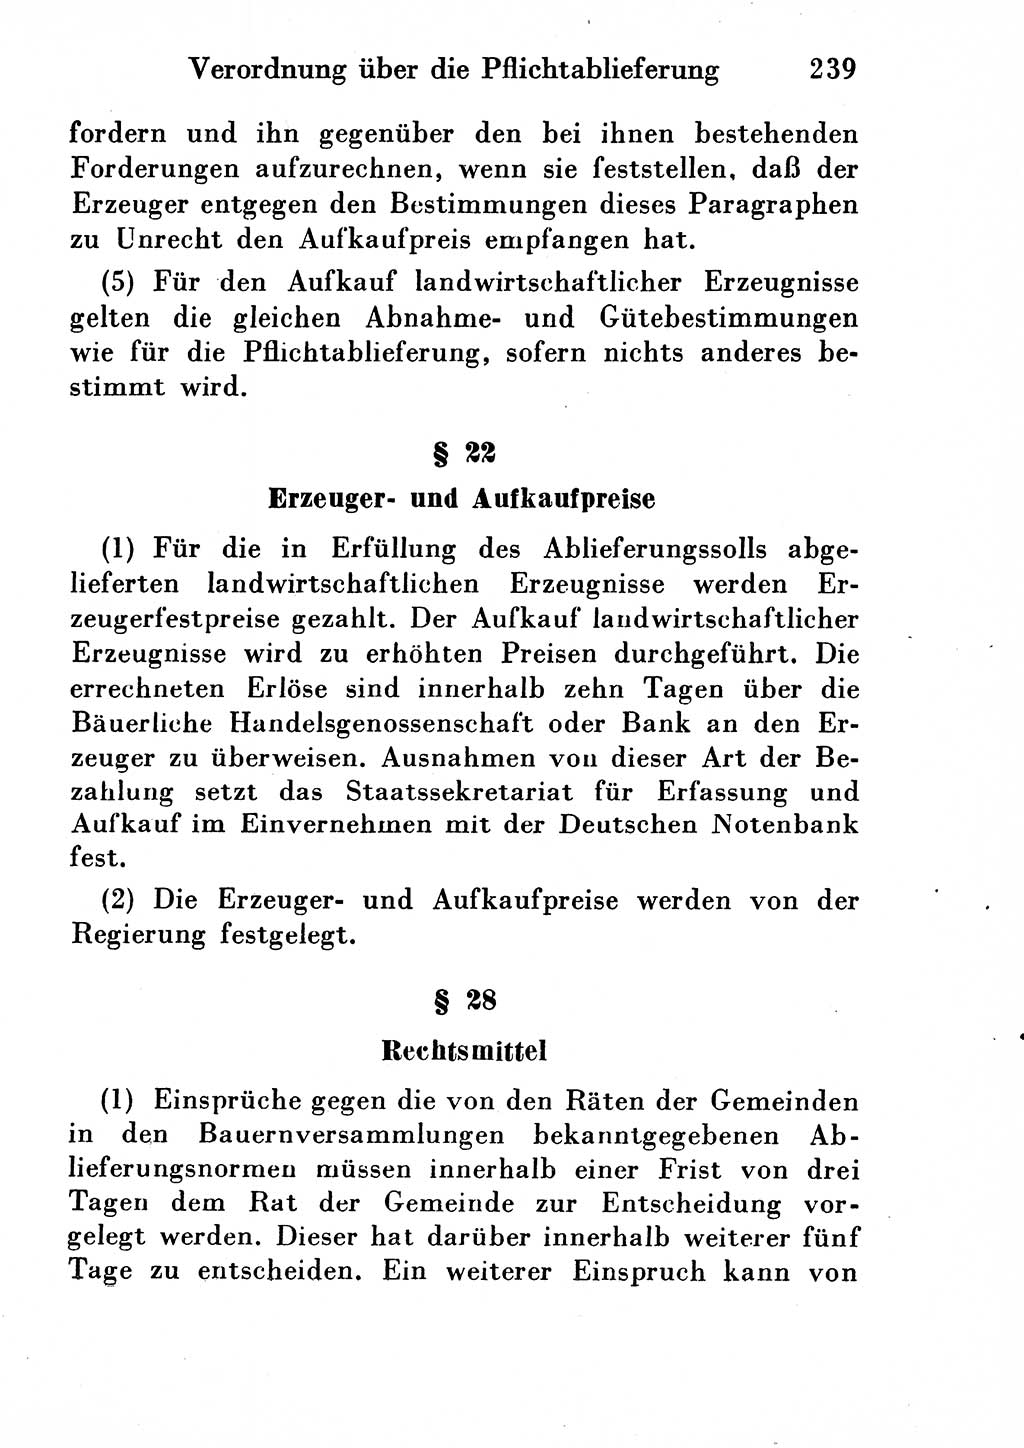 Strafgesetzbuch (StGB) und andere Strafgesetze [Deutsche Demokratische Republik (DDR)] 1954, Seite 239 (StGB Strafges. DDR 1954, S. 239)